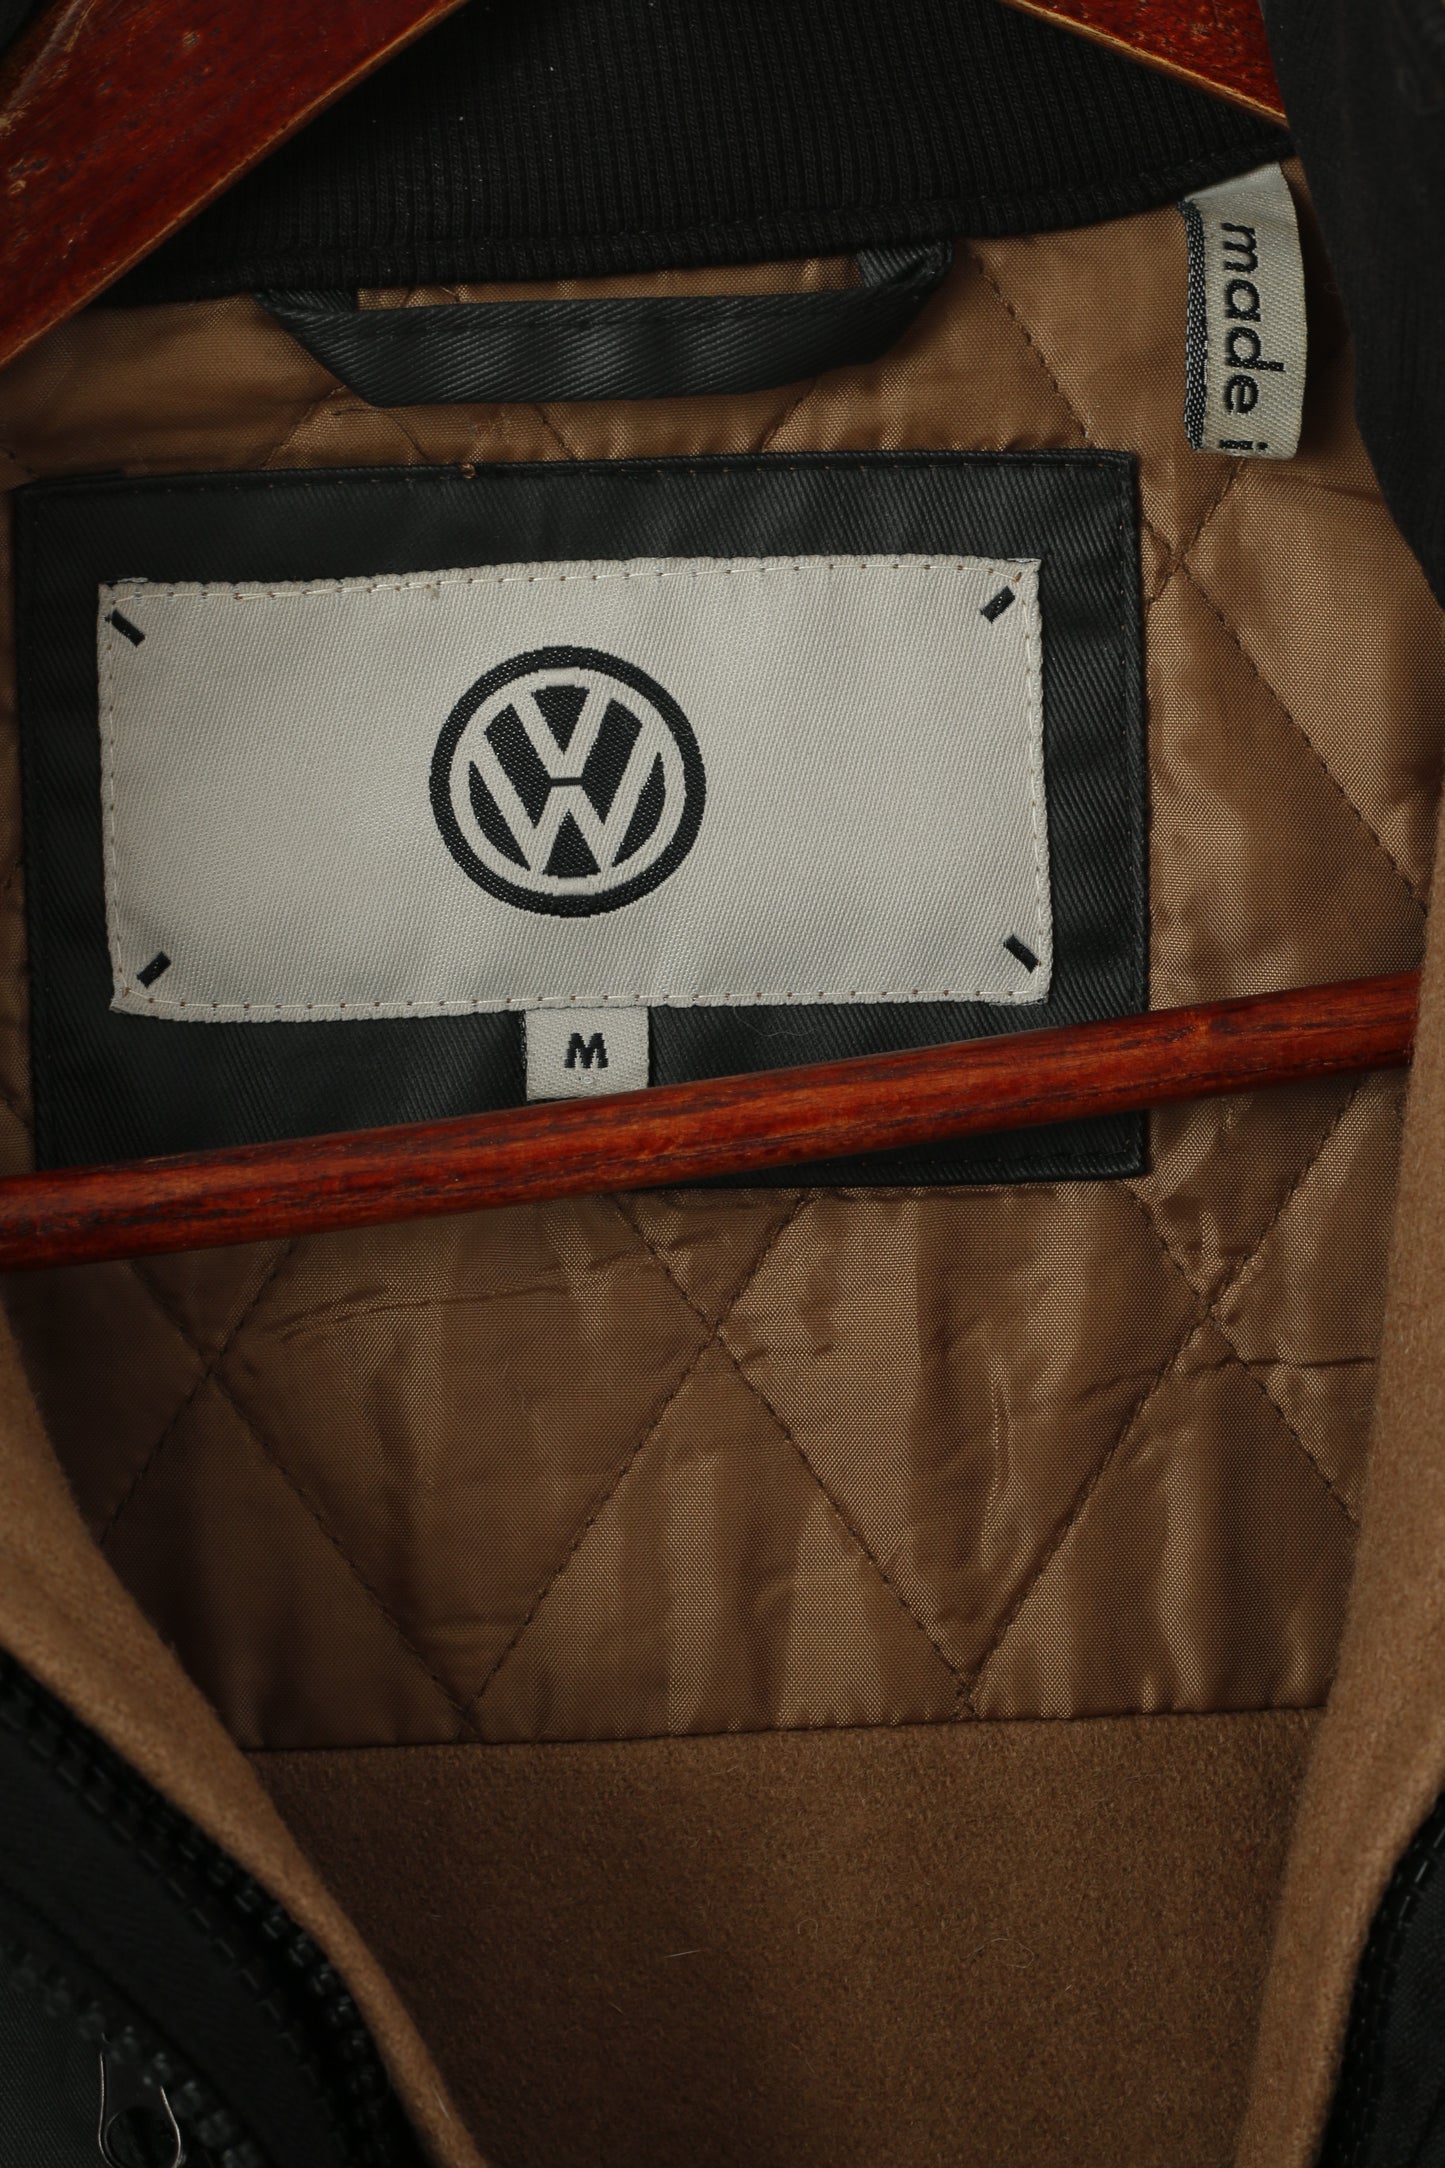 Giacca Volkswagen M da donna in cotone nero cerato VW Golf con cerniera e fodera rimovibile